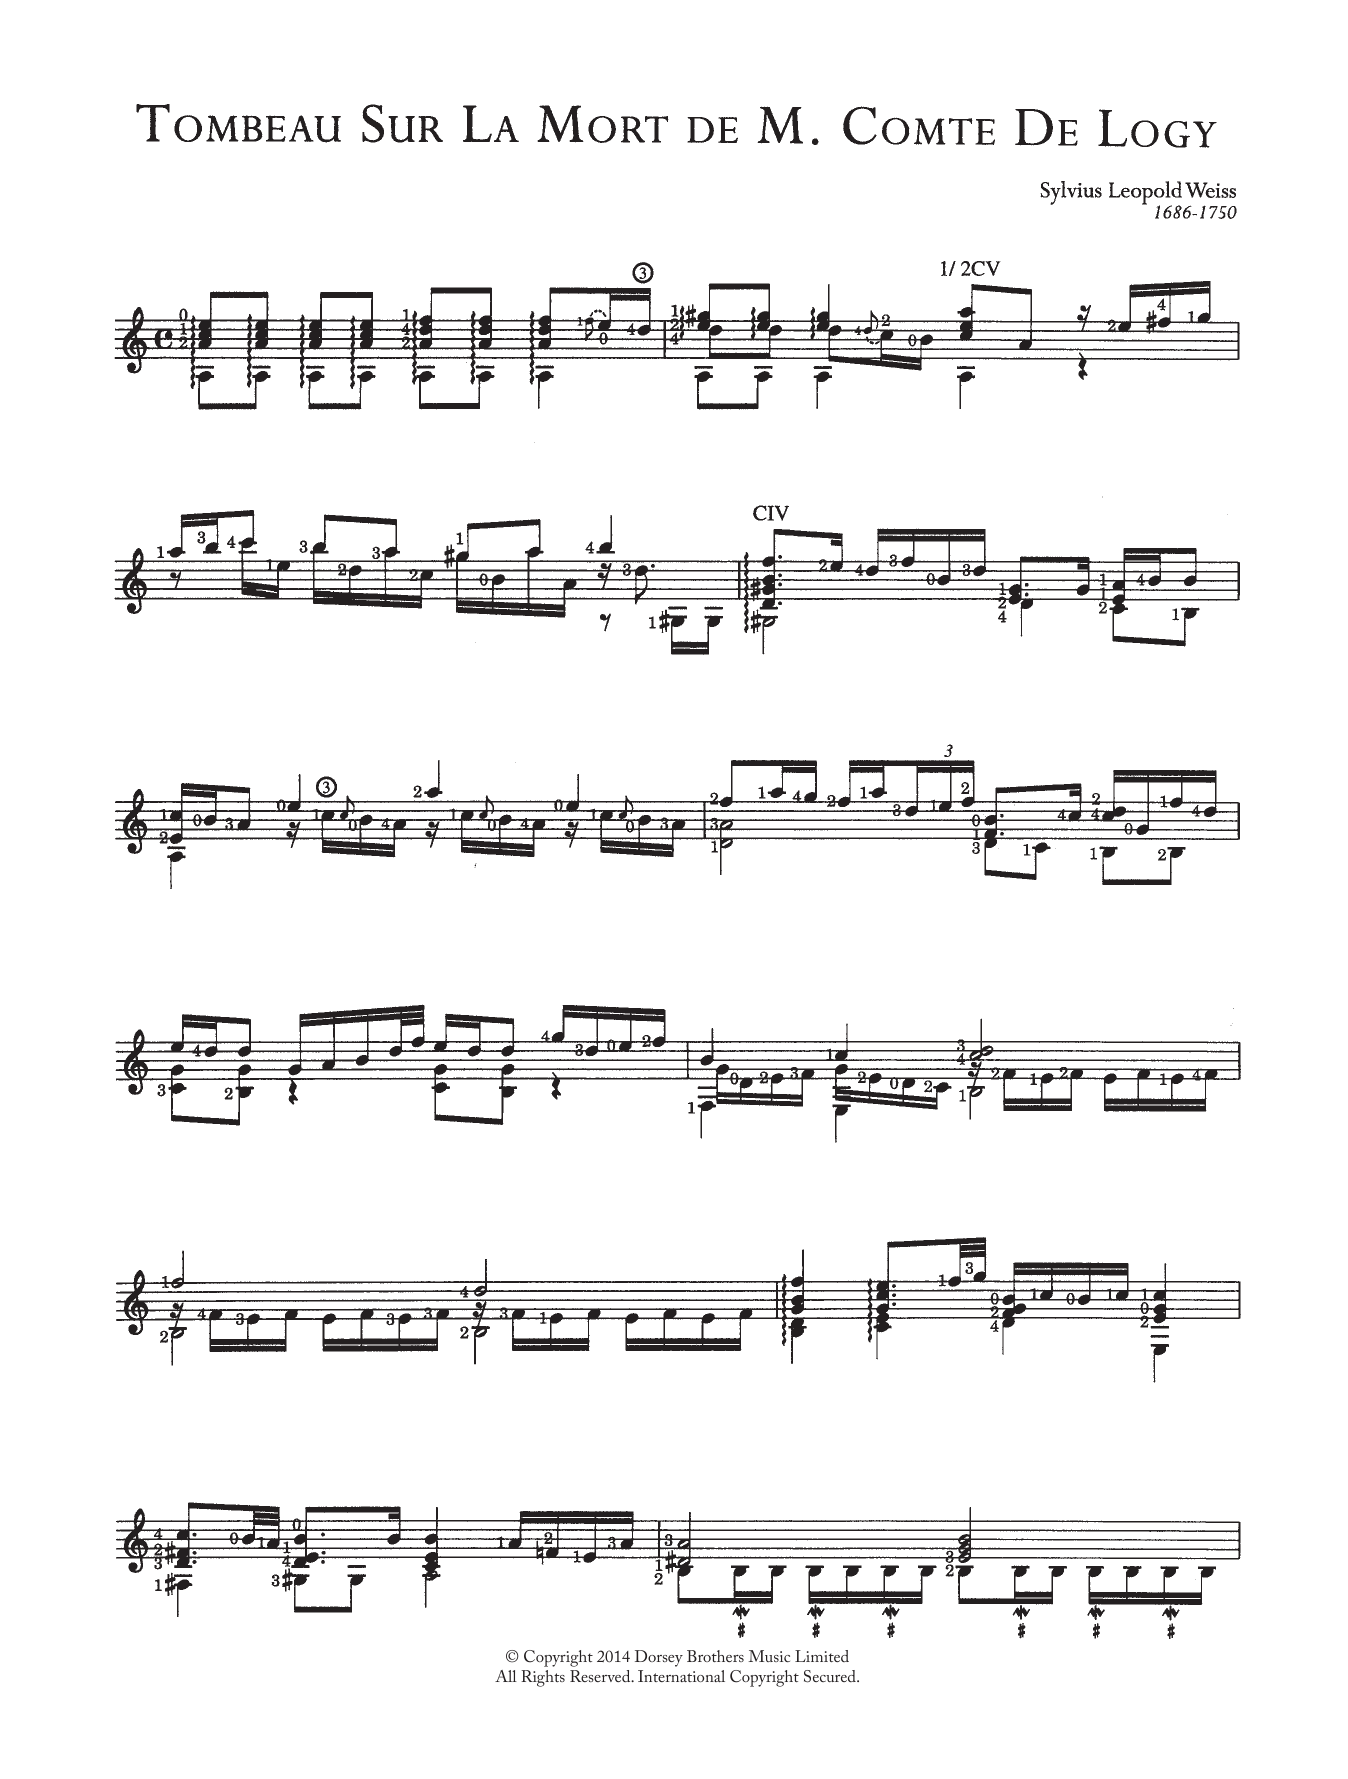 Download Sylvius Leopold Weiss Tombeau Sur La Mort De M. Comte De Logy Sheet Music